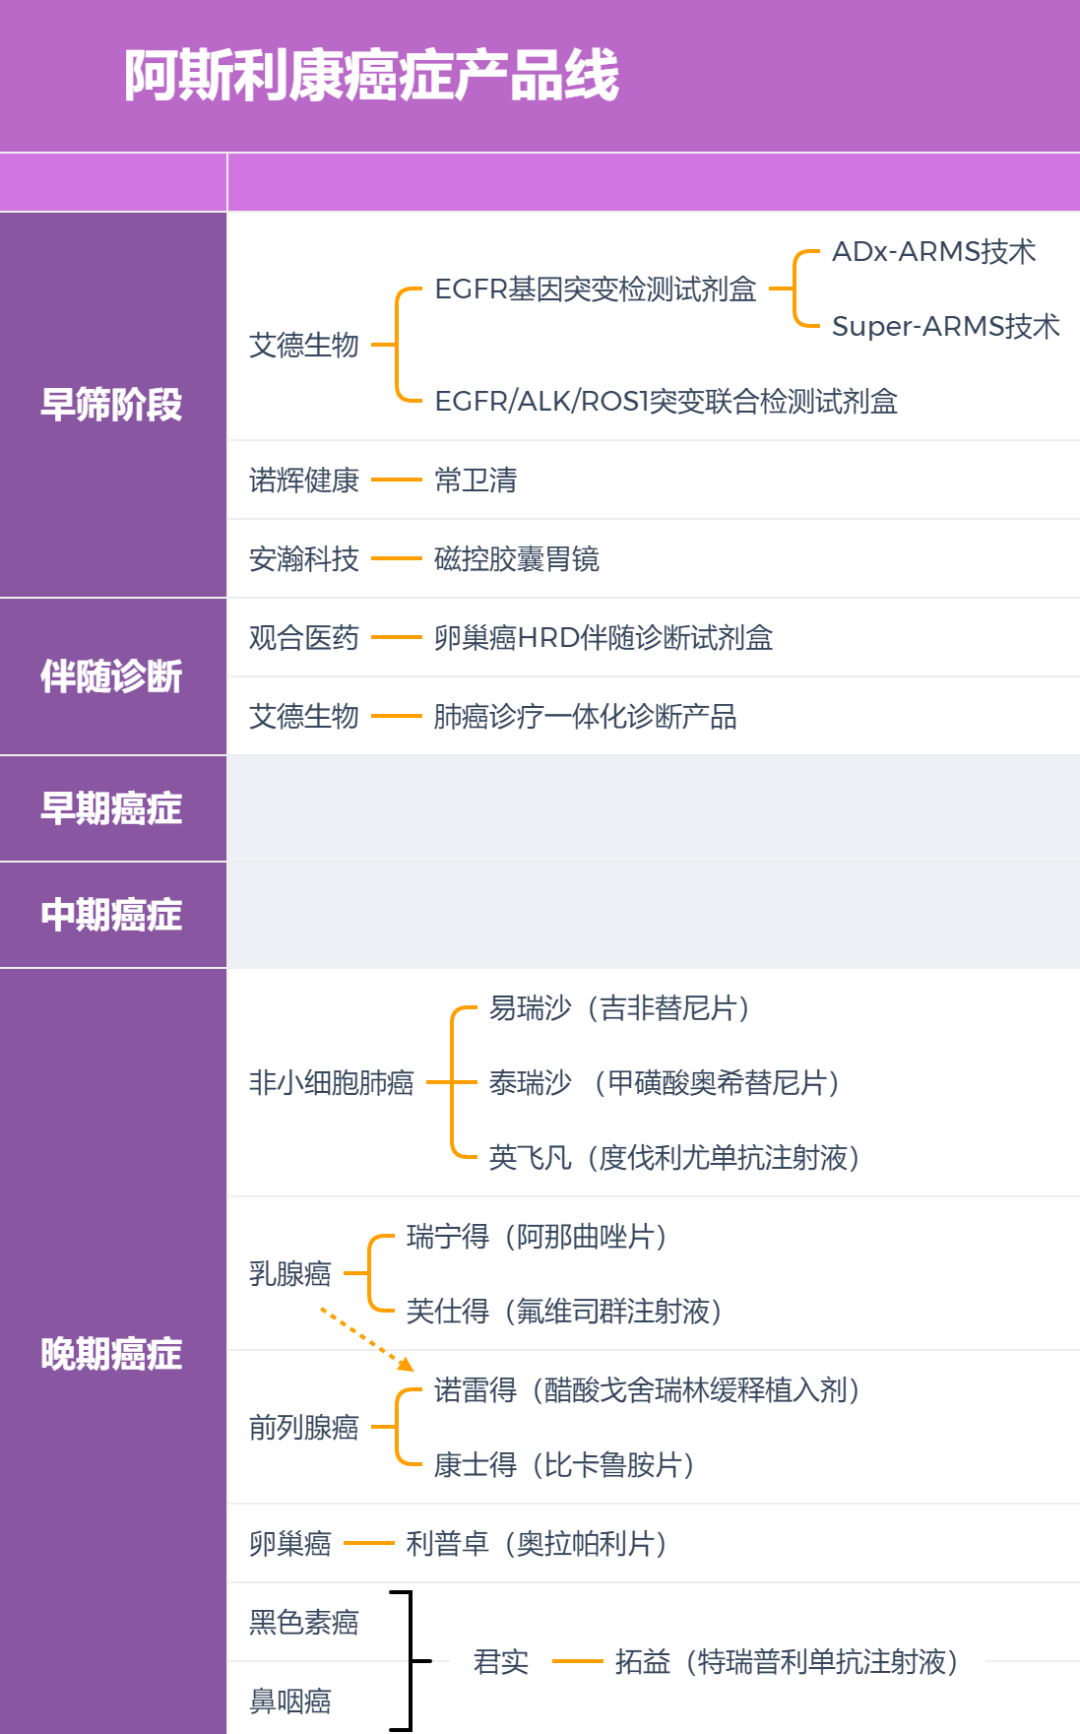 阿斯利康中国的癌症类产品线。制图丨放大灯团队